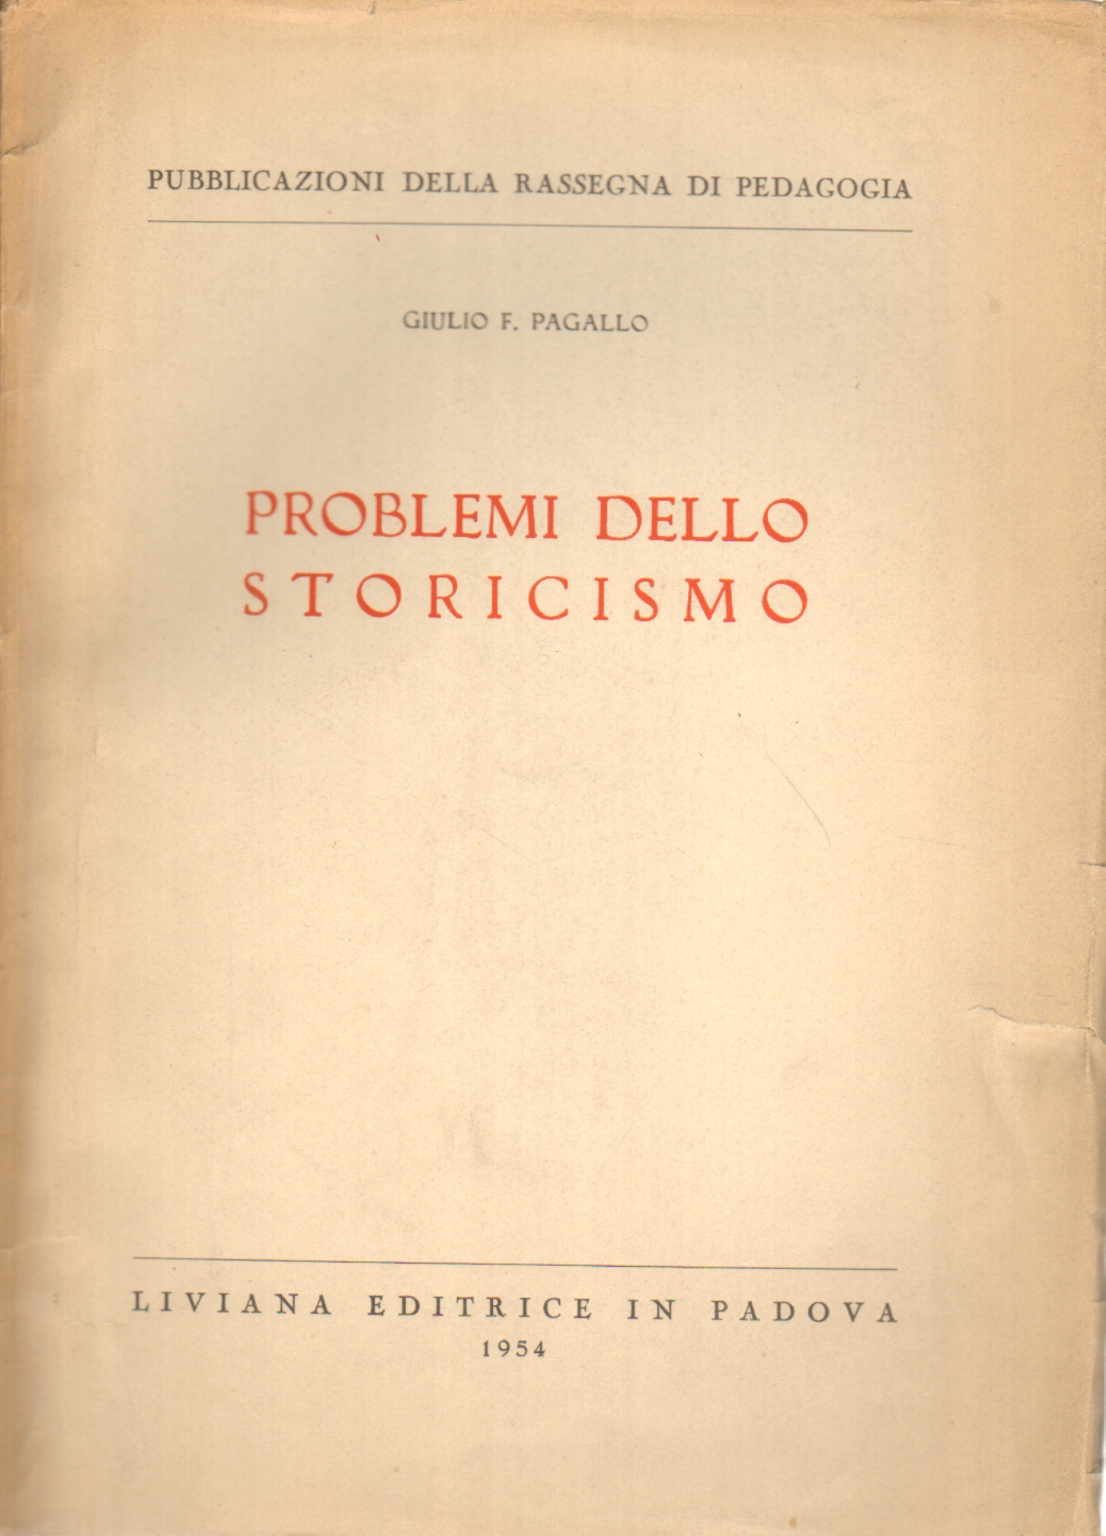 Problemi dello storicismo, Giulio F. Pagallo